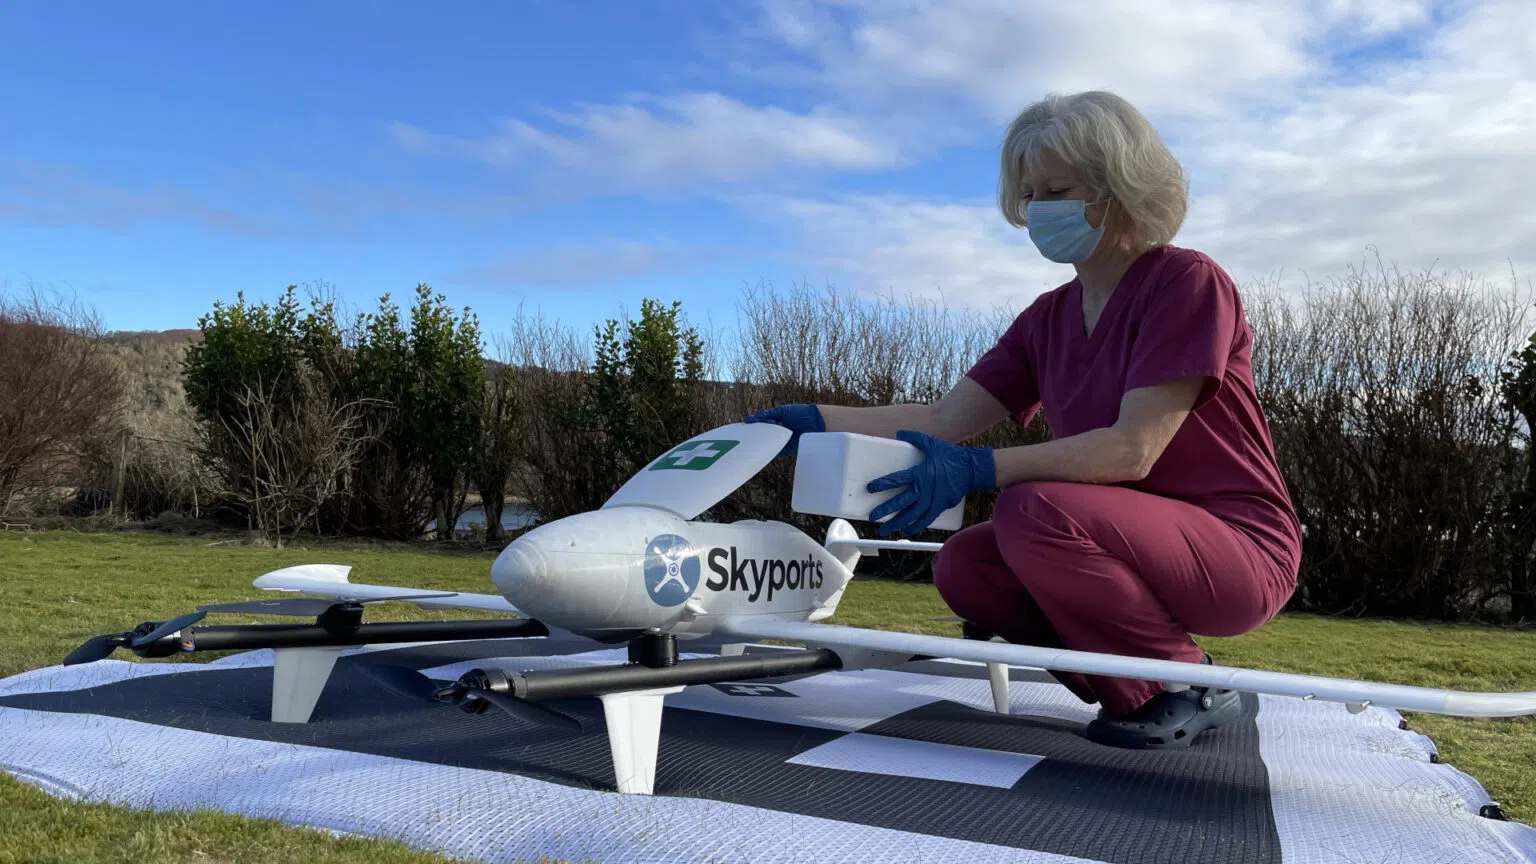 Can drones be the aspirin for pharma supply chain headaches?